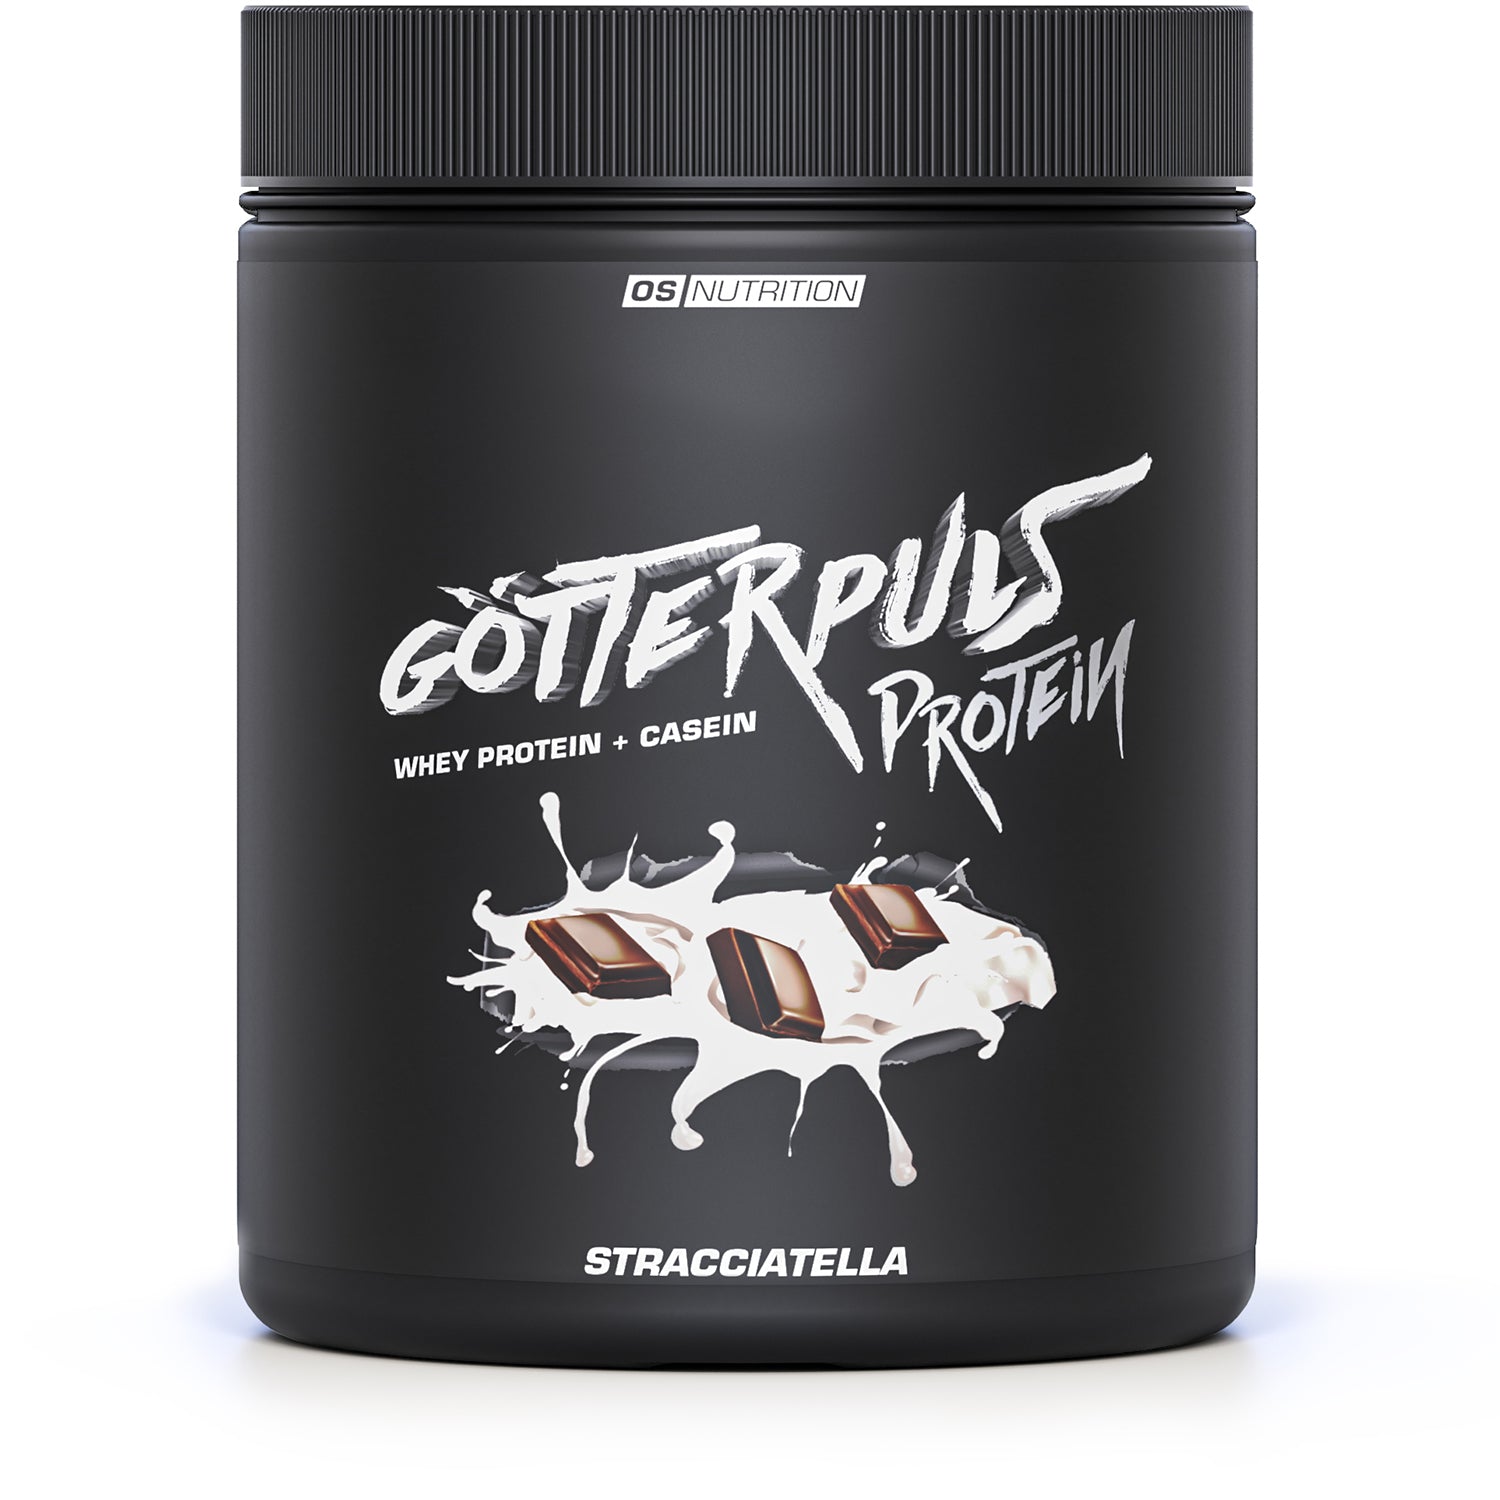 Götterpuls® Protein – Premium Whey Protein & Casein